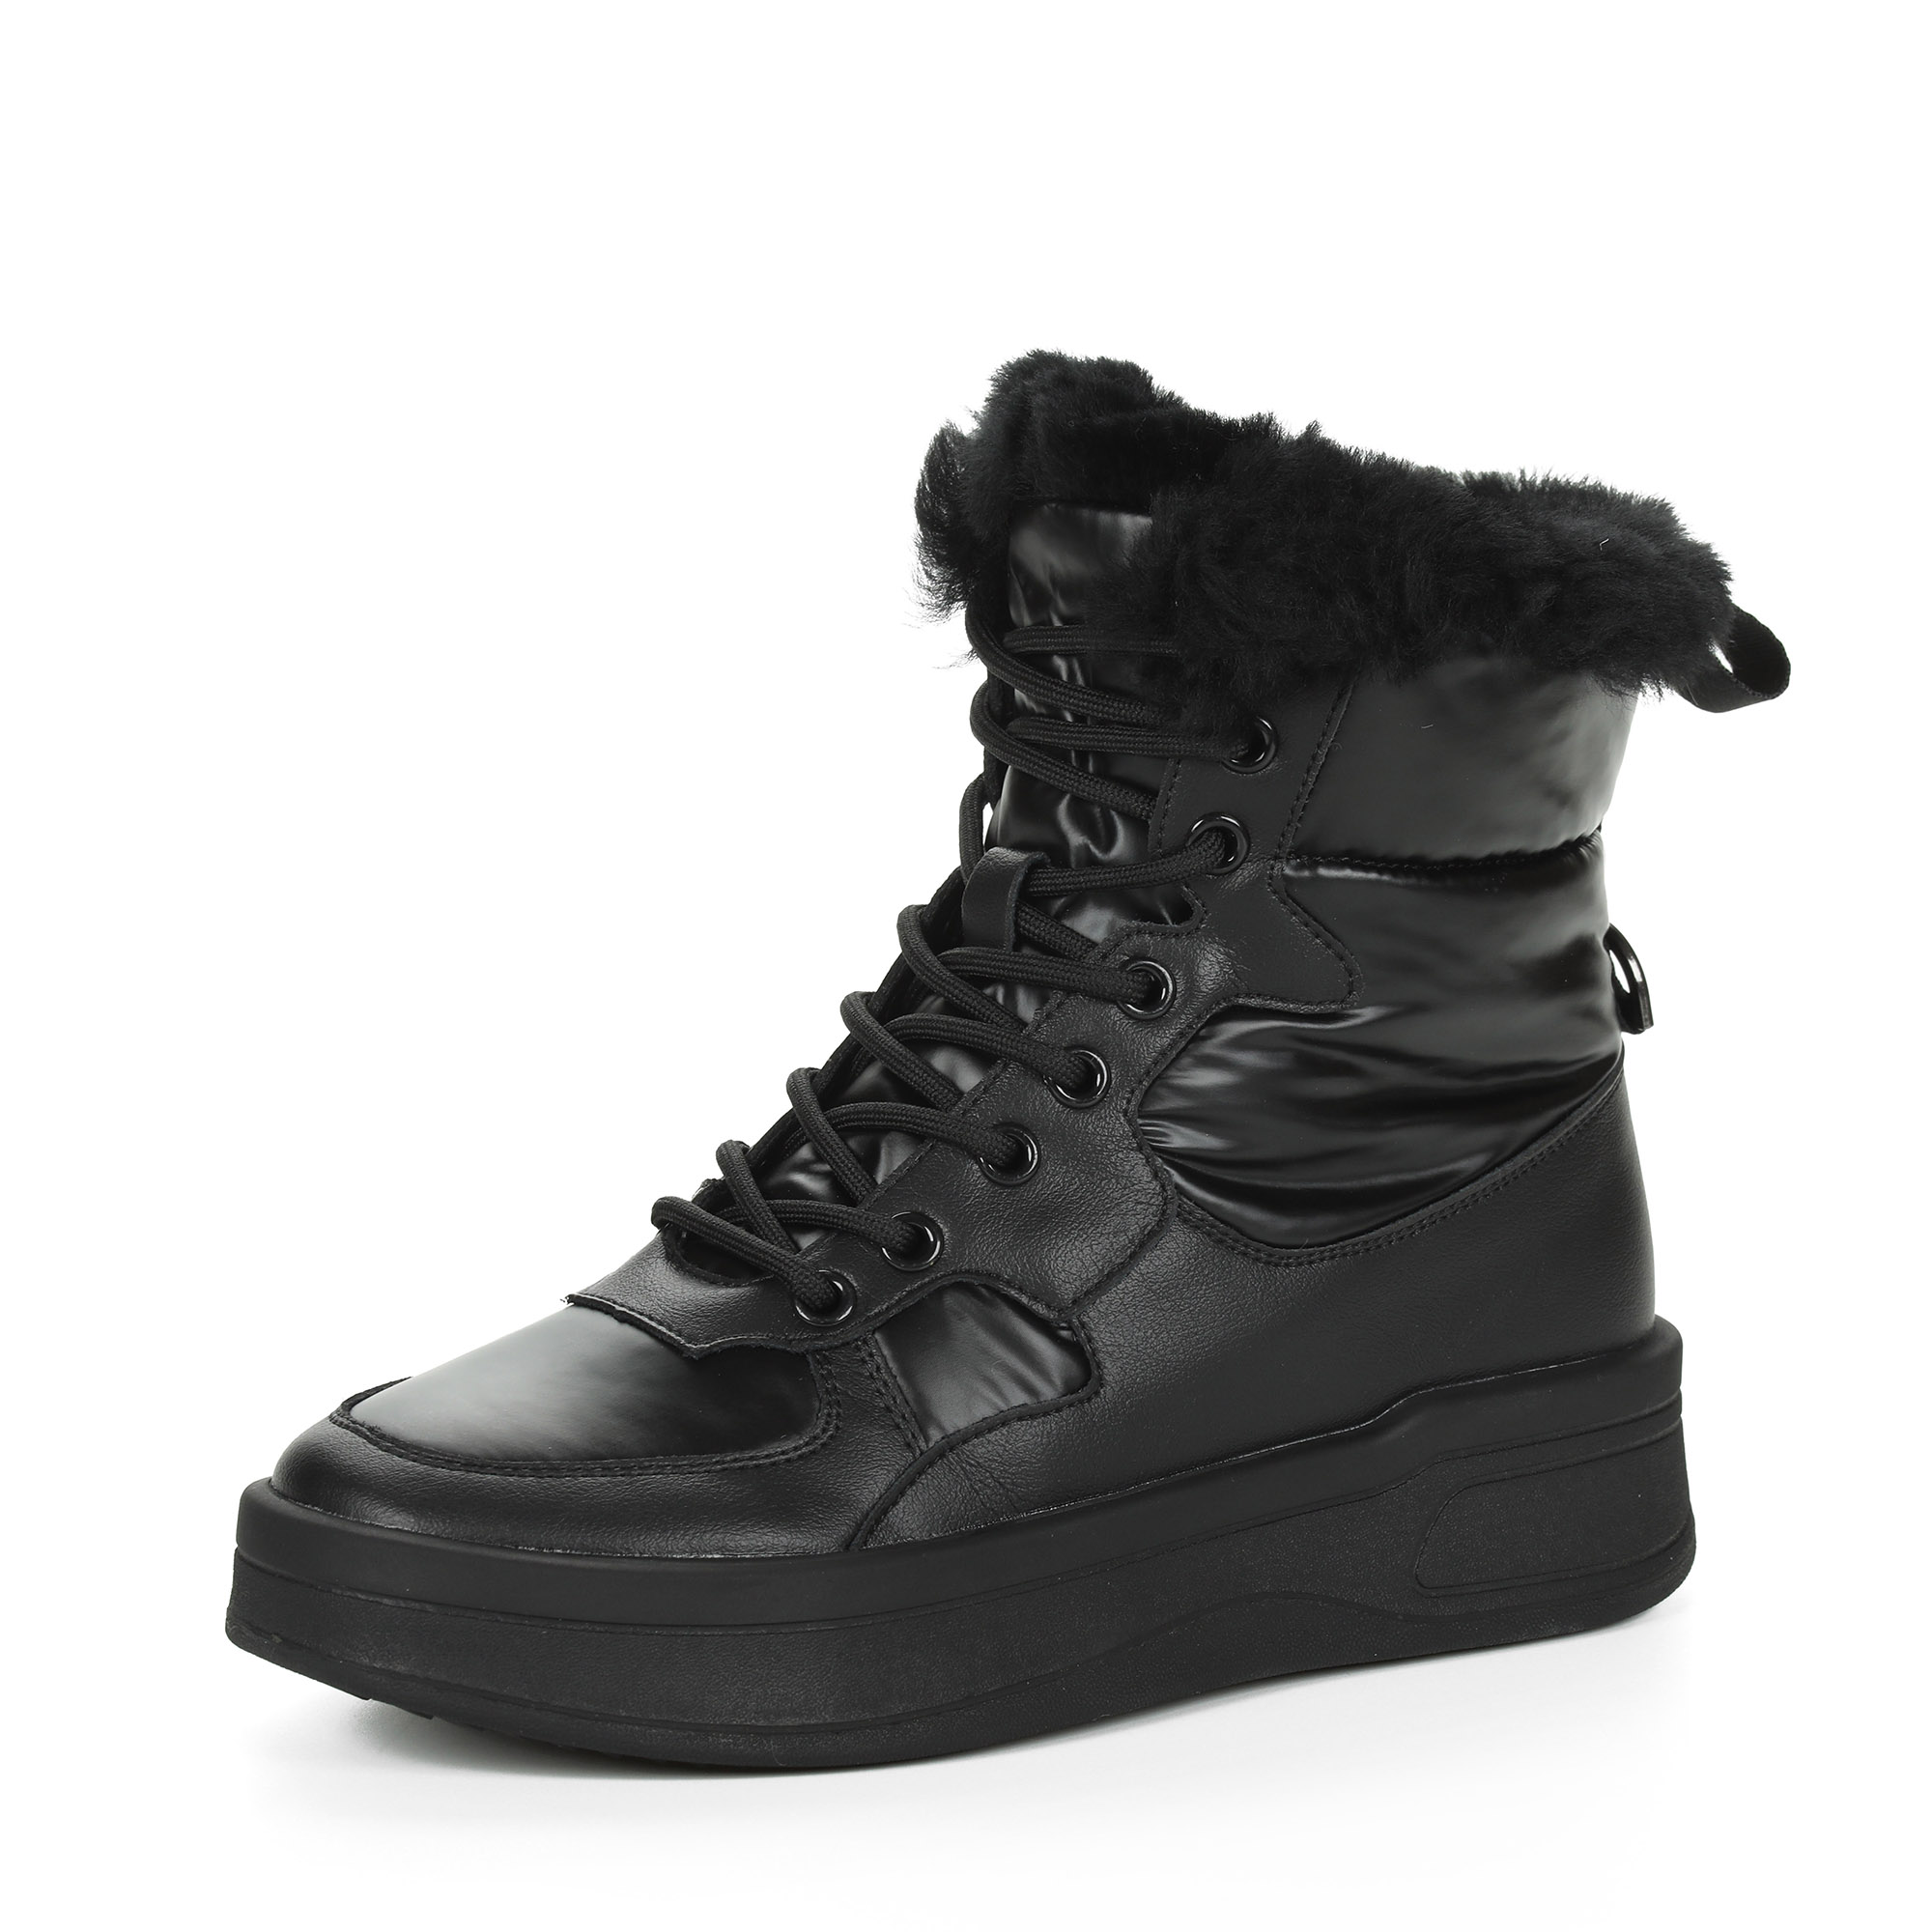 Черные высокие кроссовки из комбинированных материалов смеховой опушкой на подкладке из натуральной шерсти на утолщенной платформе Respect, размер 37, цвет черный - фото 3